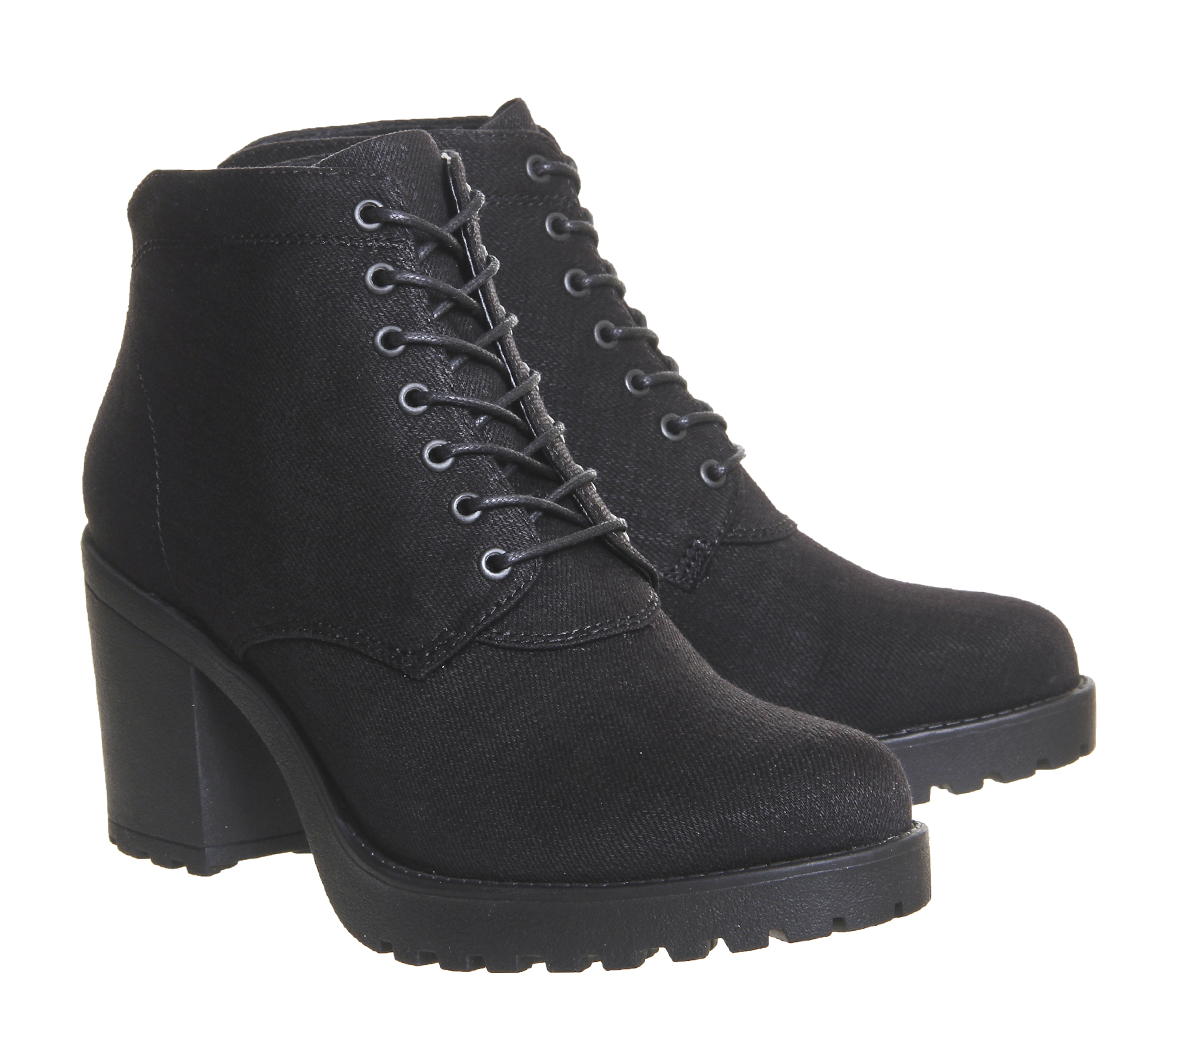 Vagabond Shoemakers Grace Canvas Boots Black Canvas - Women's Ankle Boots